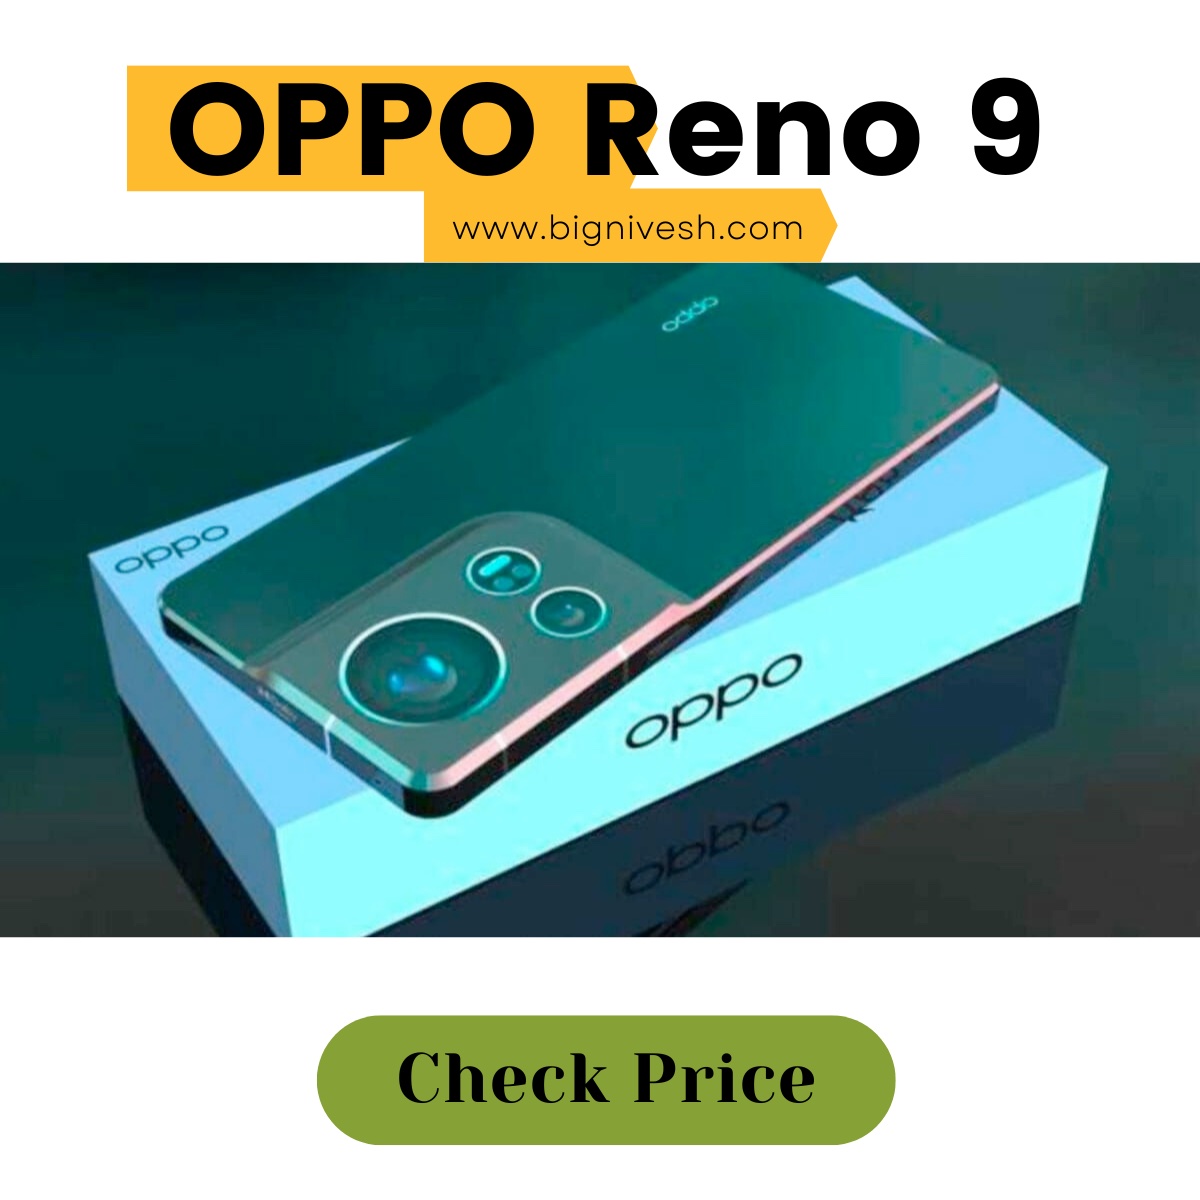 OPPO Reno 9 5g price in india